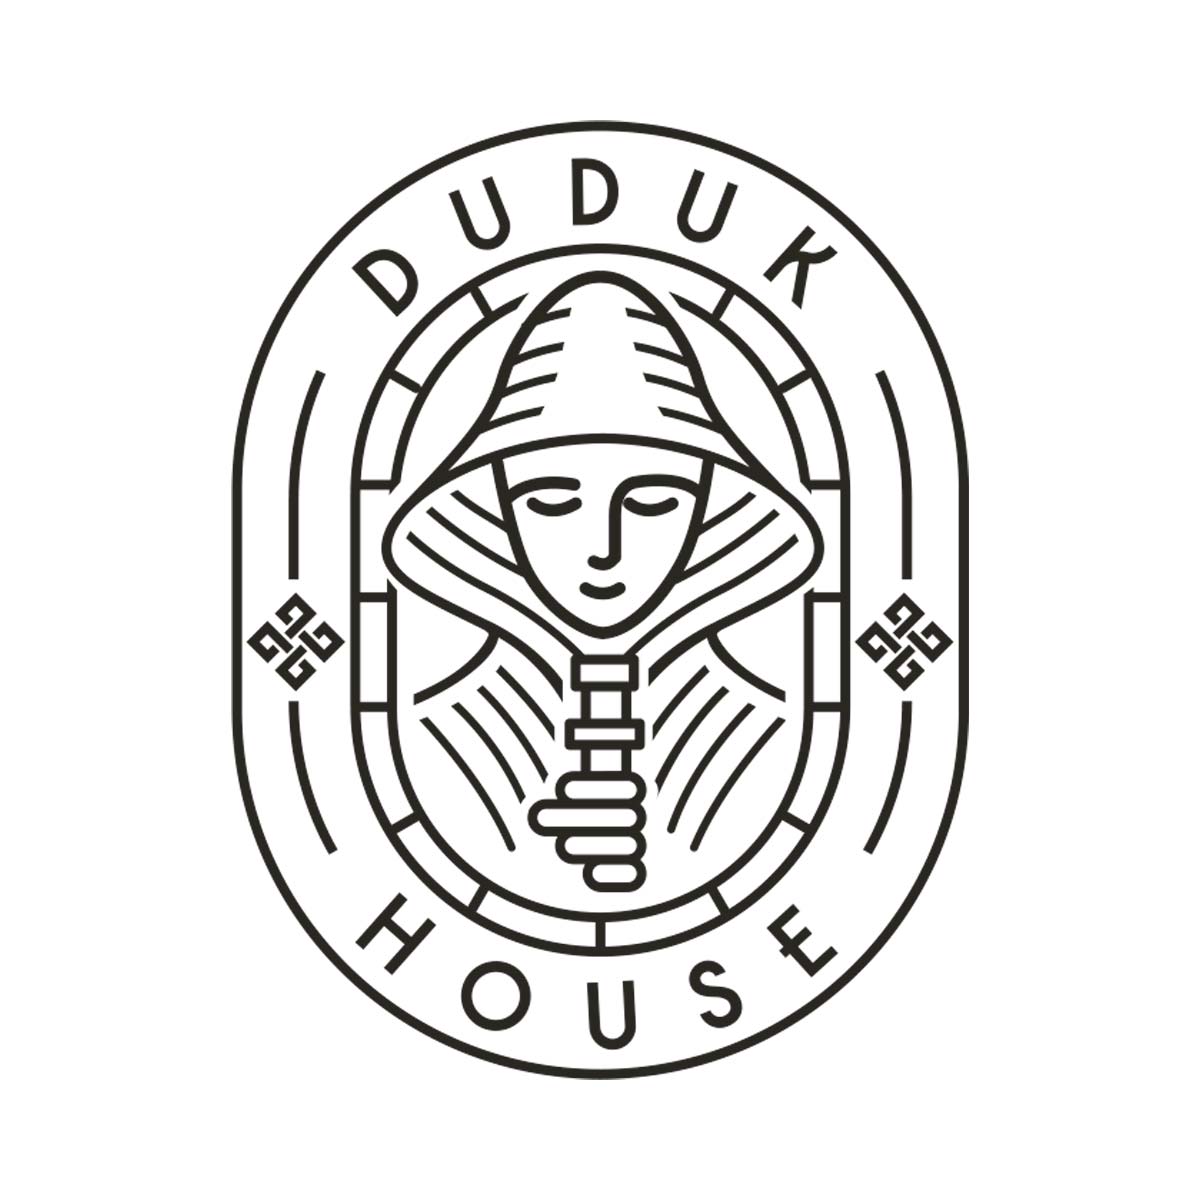 Dudukhouse Logo